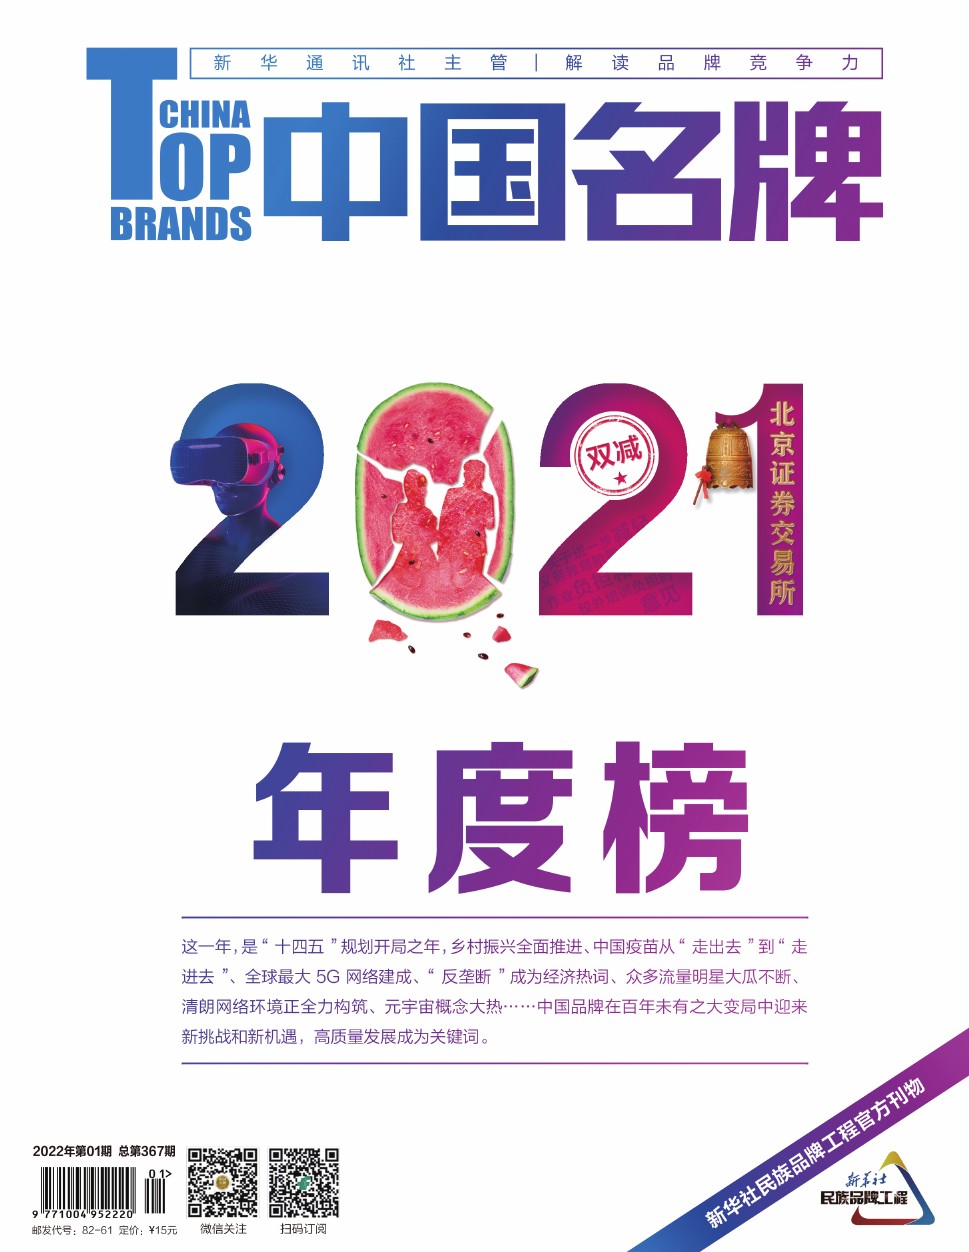 《中国名牌》电子杂志2022年第1期